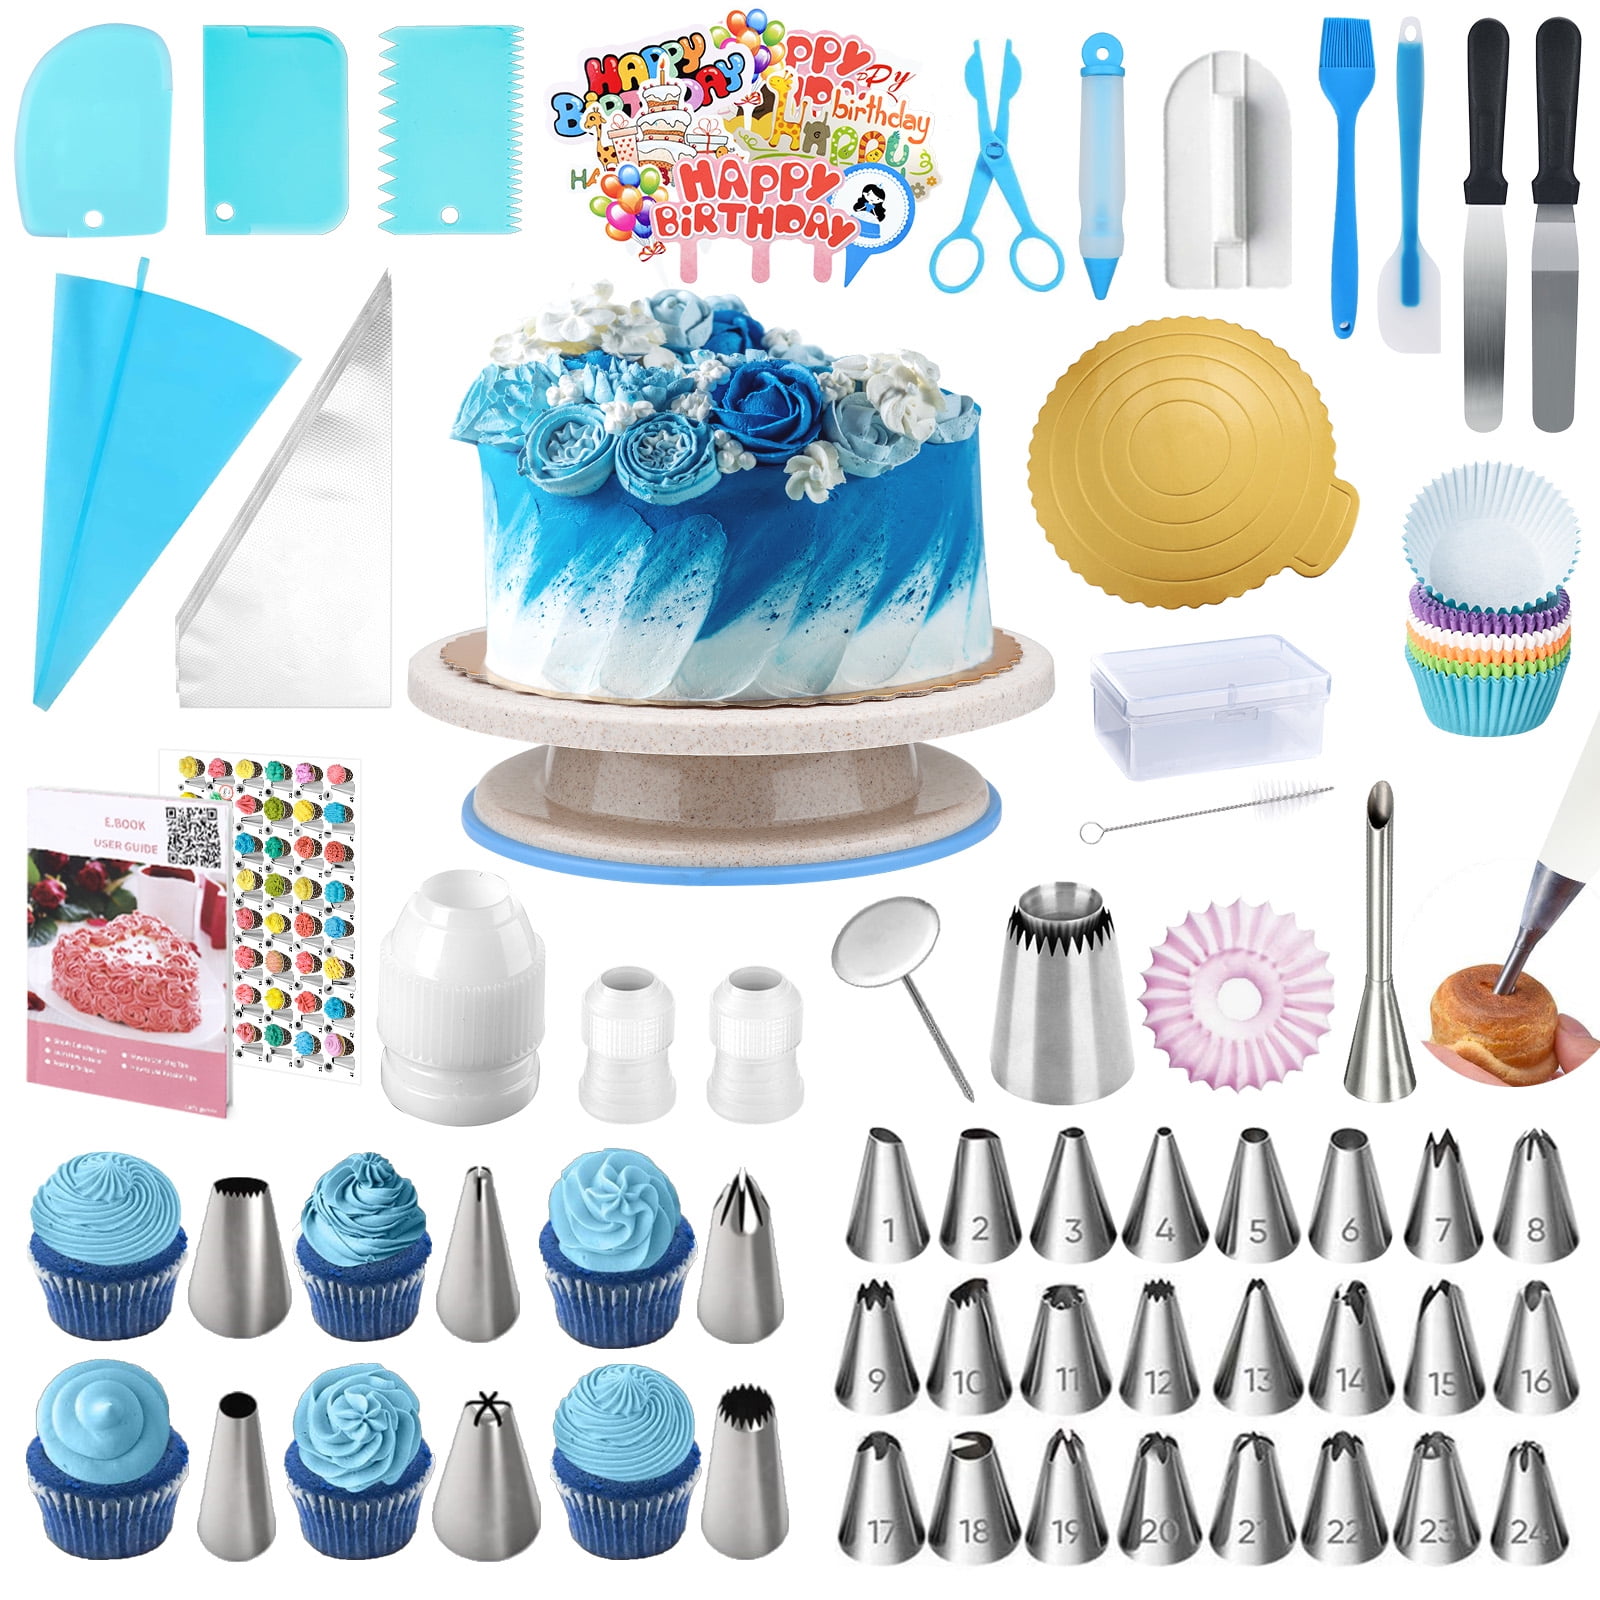 700PCs Cake Decorating Supplies Kit With Baking Supplies- Cake